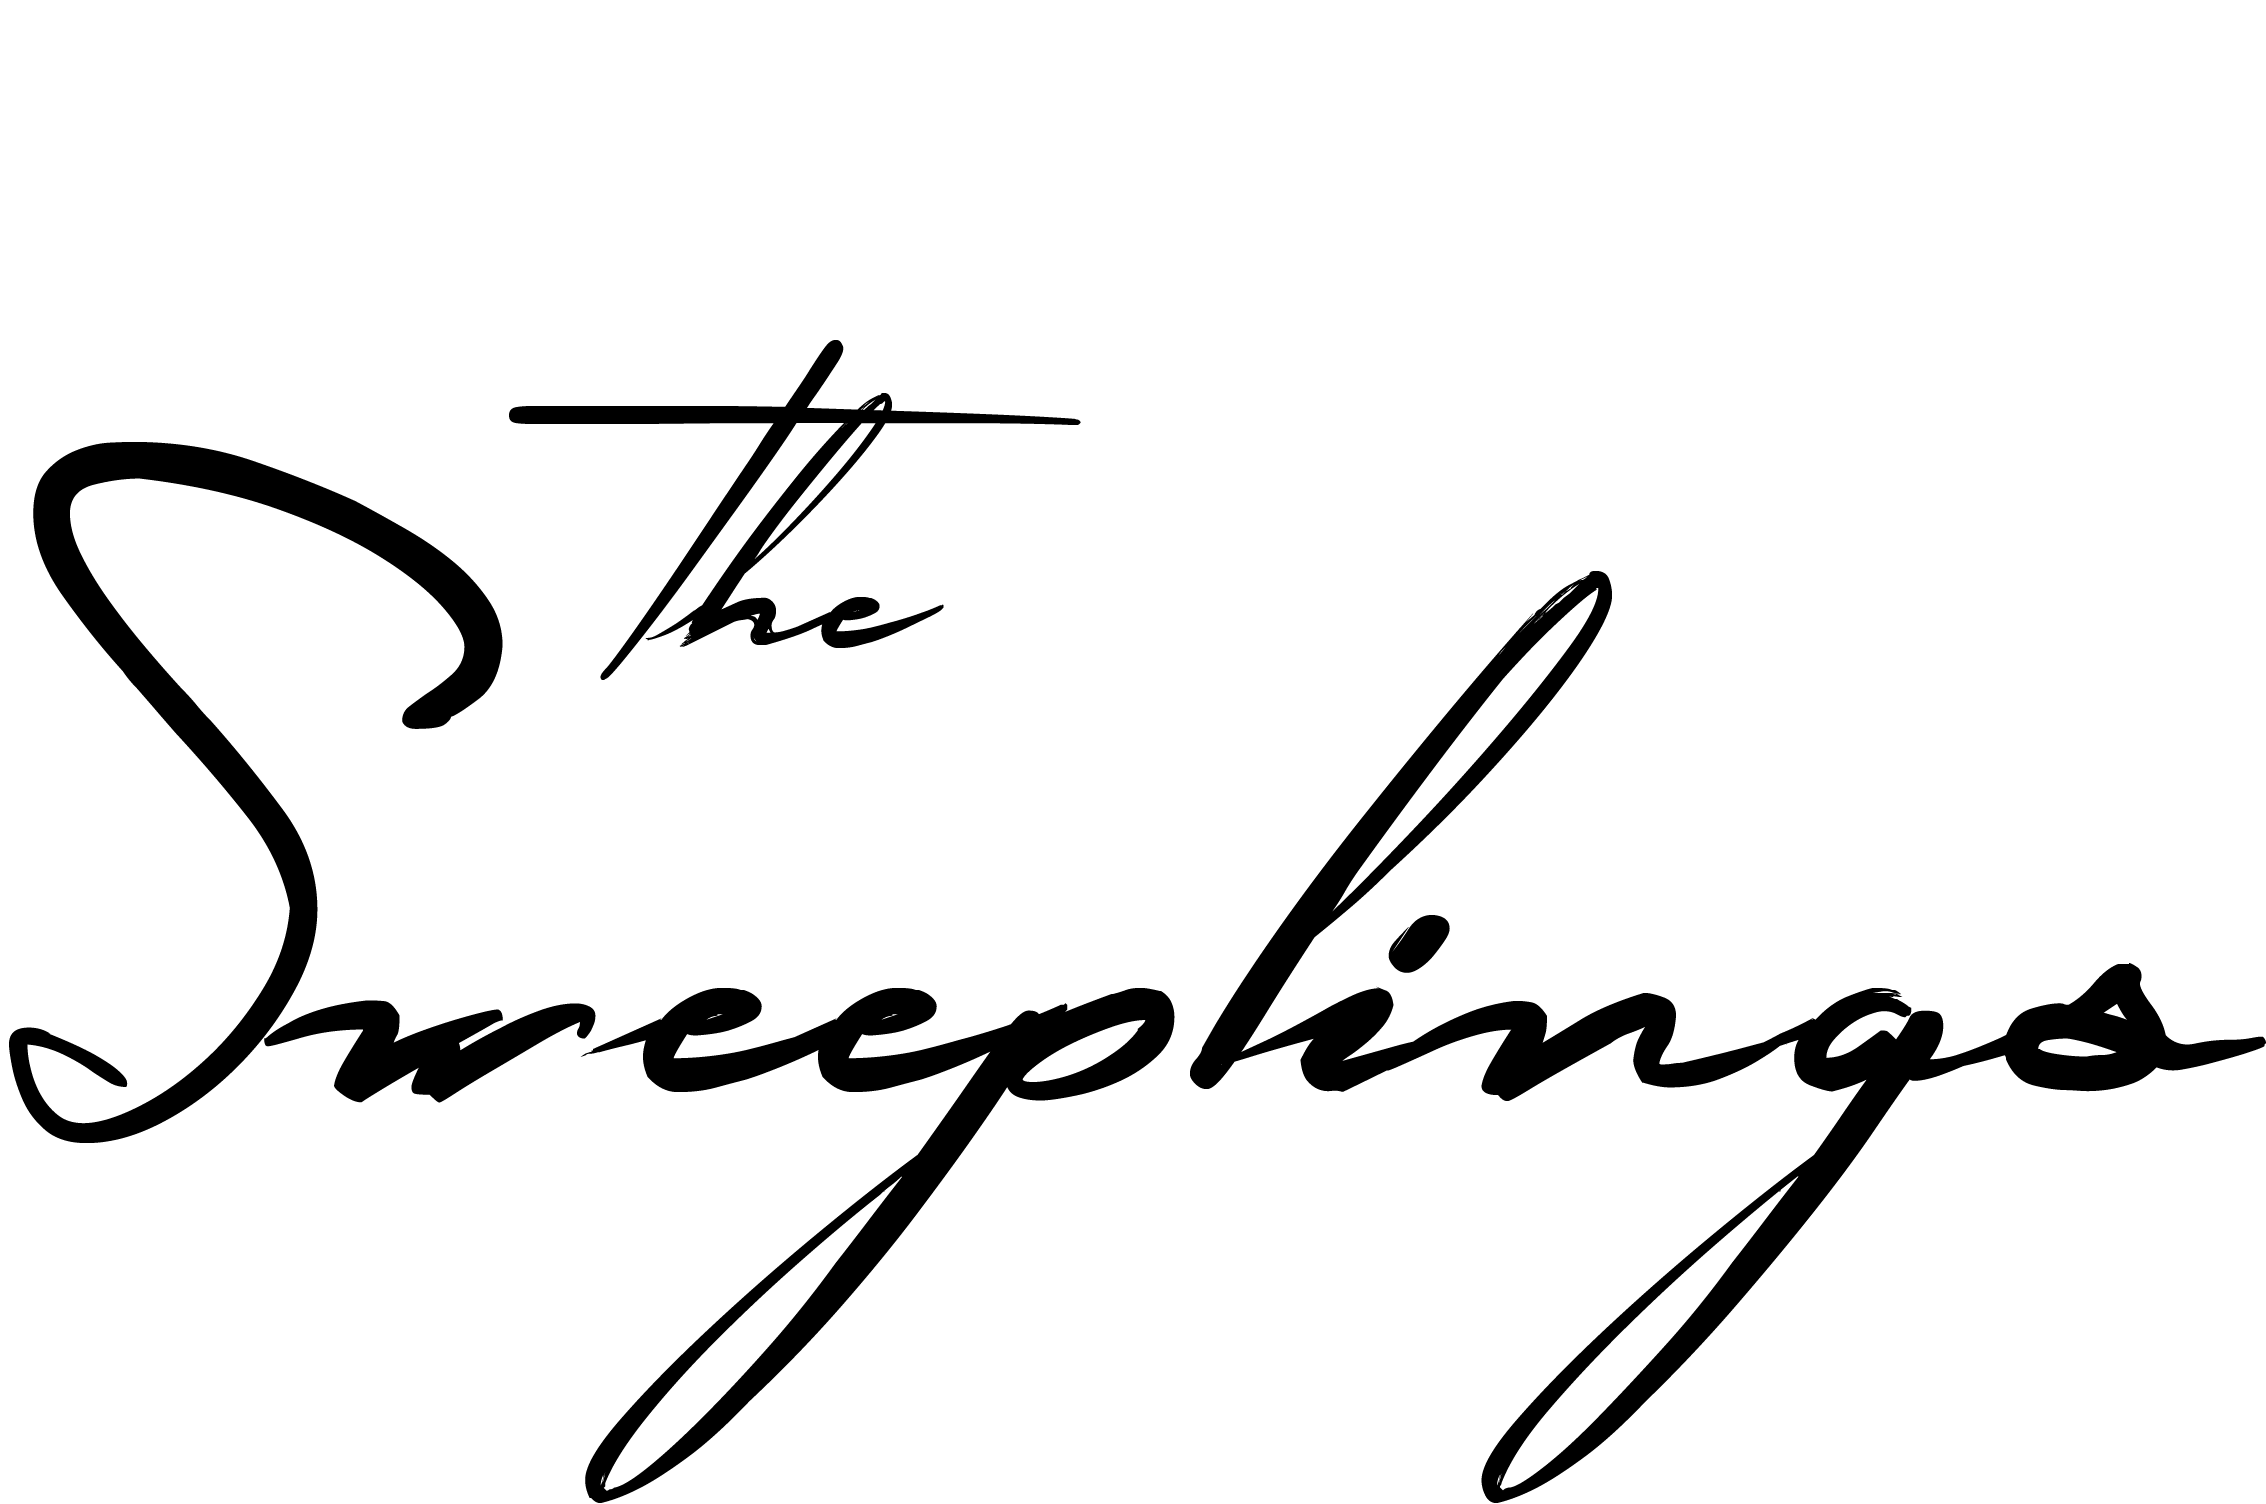 The Sweeplings